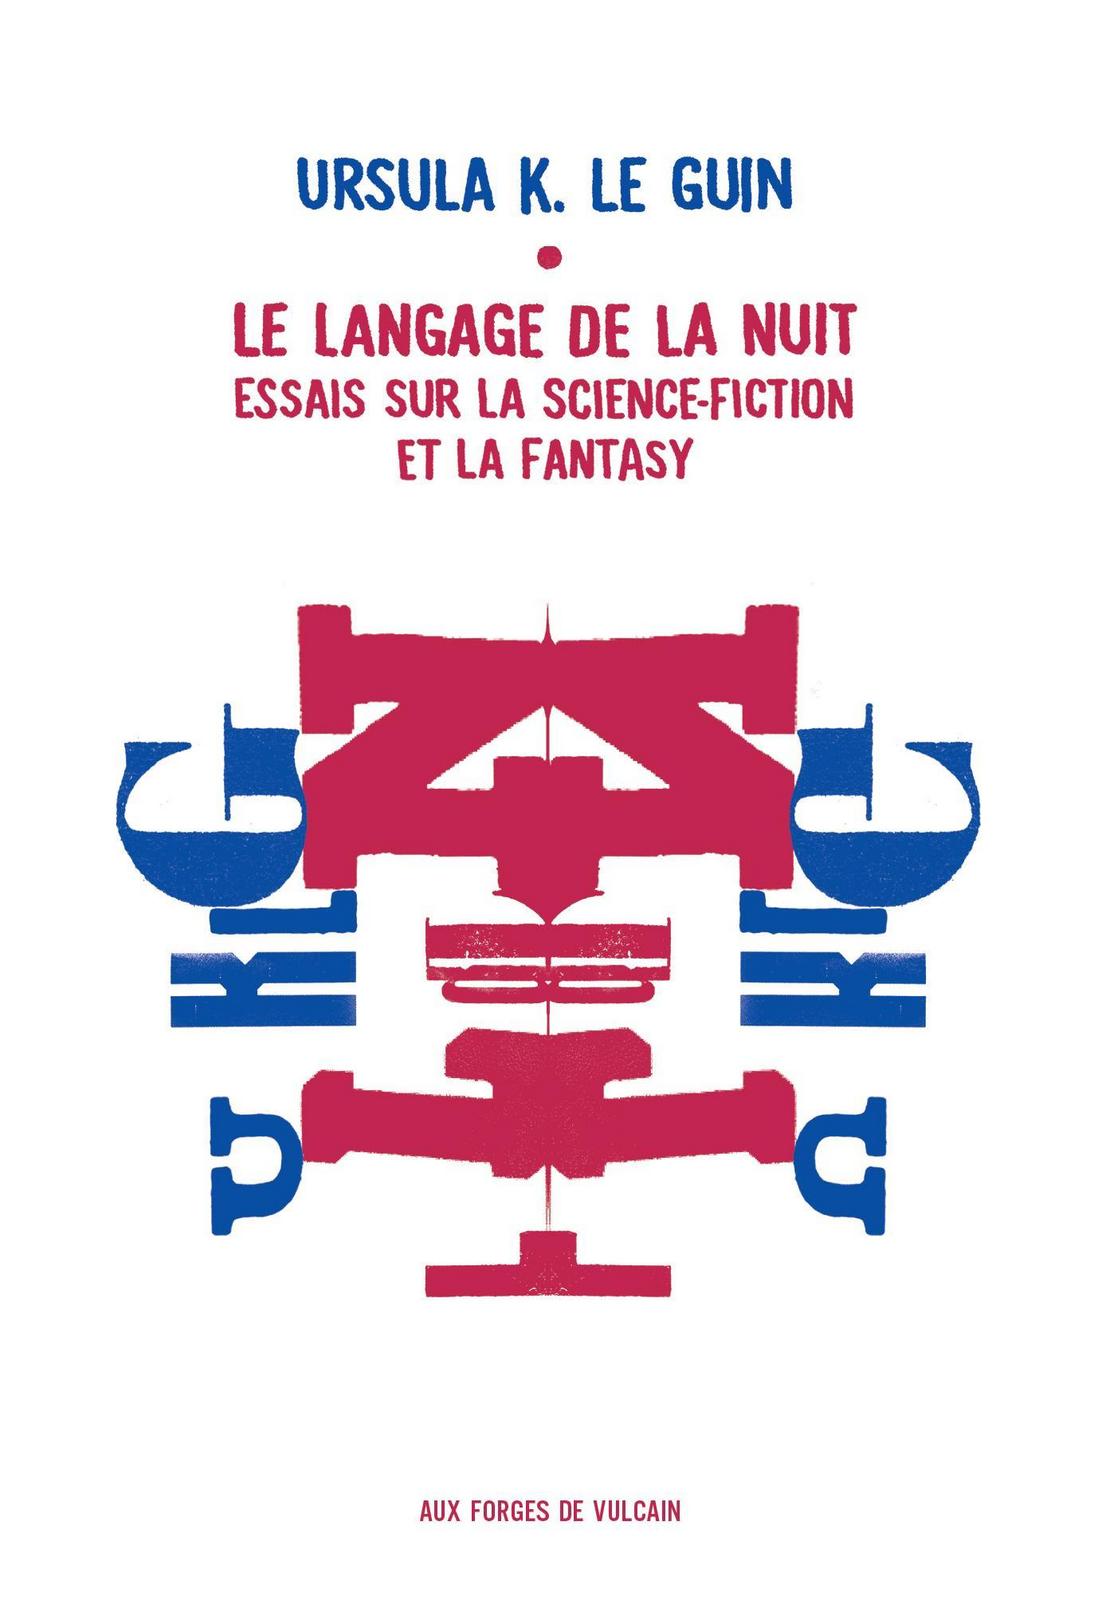 Ursula K. Le Guin: Le langage de la nuit : essais sur la fantasy et la science-fiction (French language, 2016)